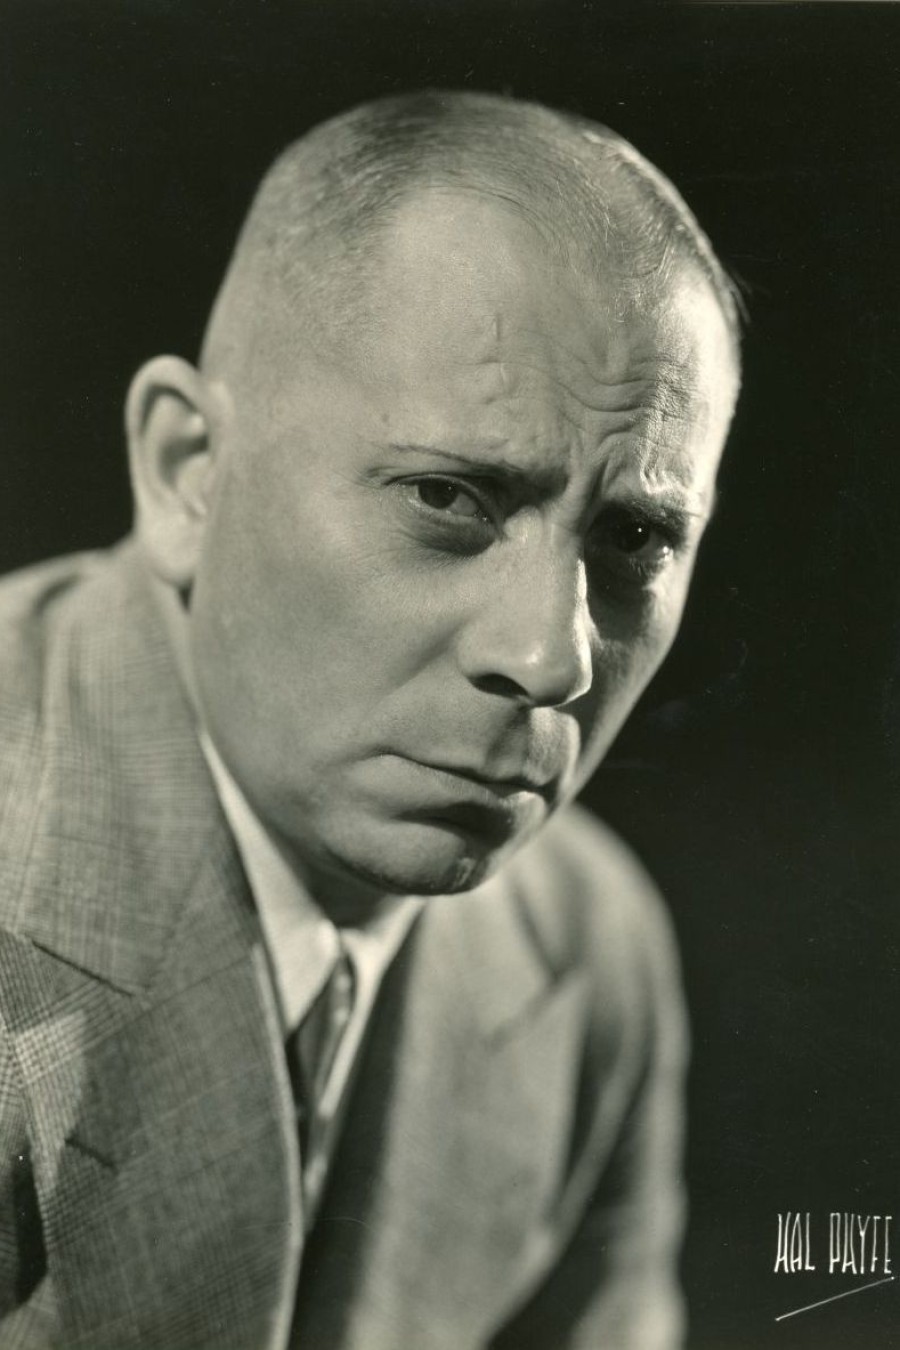 Exklusives Porträtfoto für die Fox Film Corporation, ca. 1933